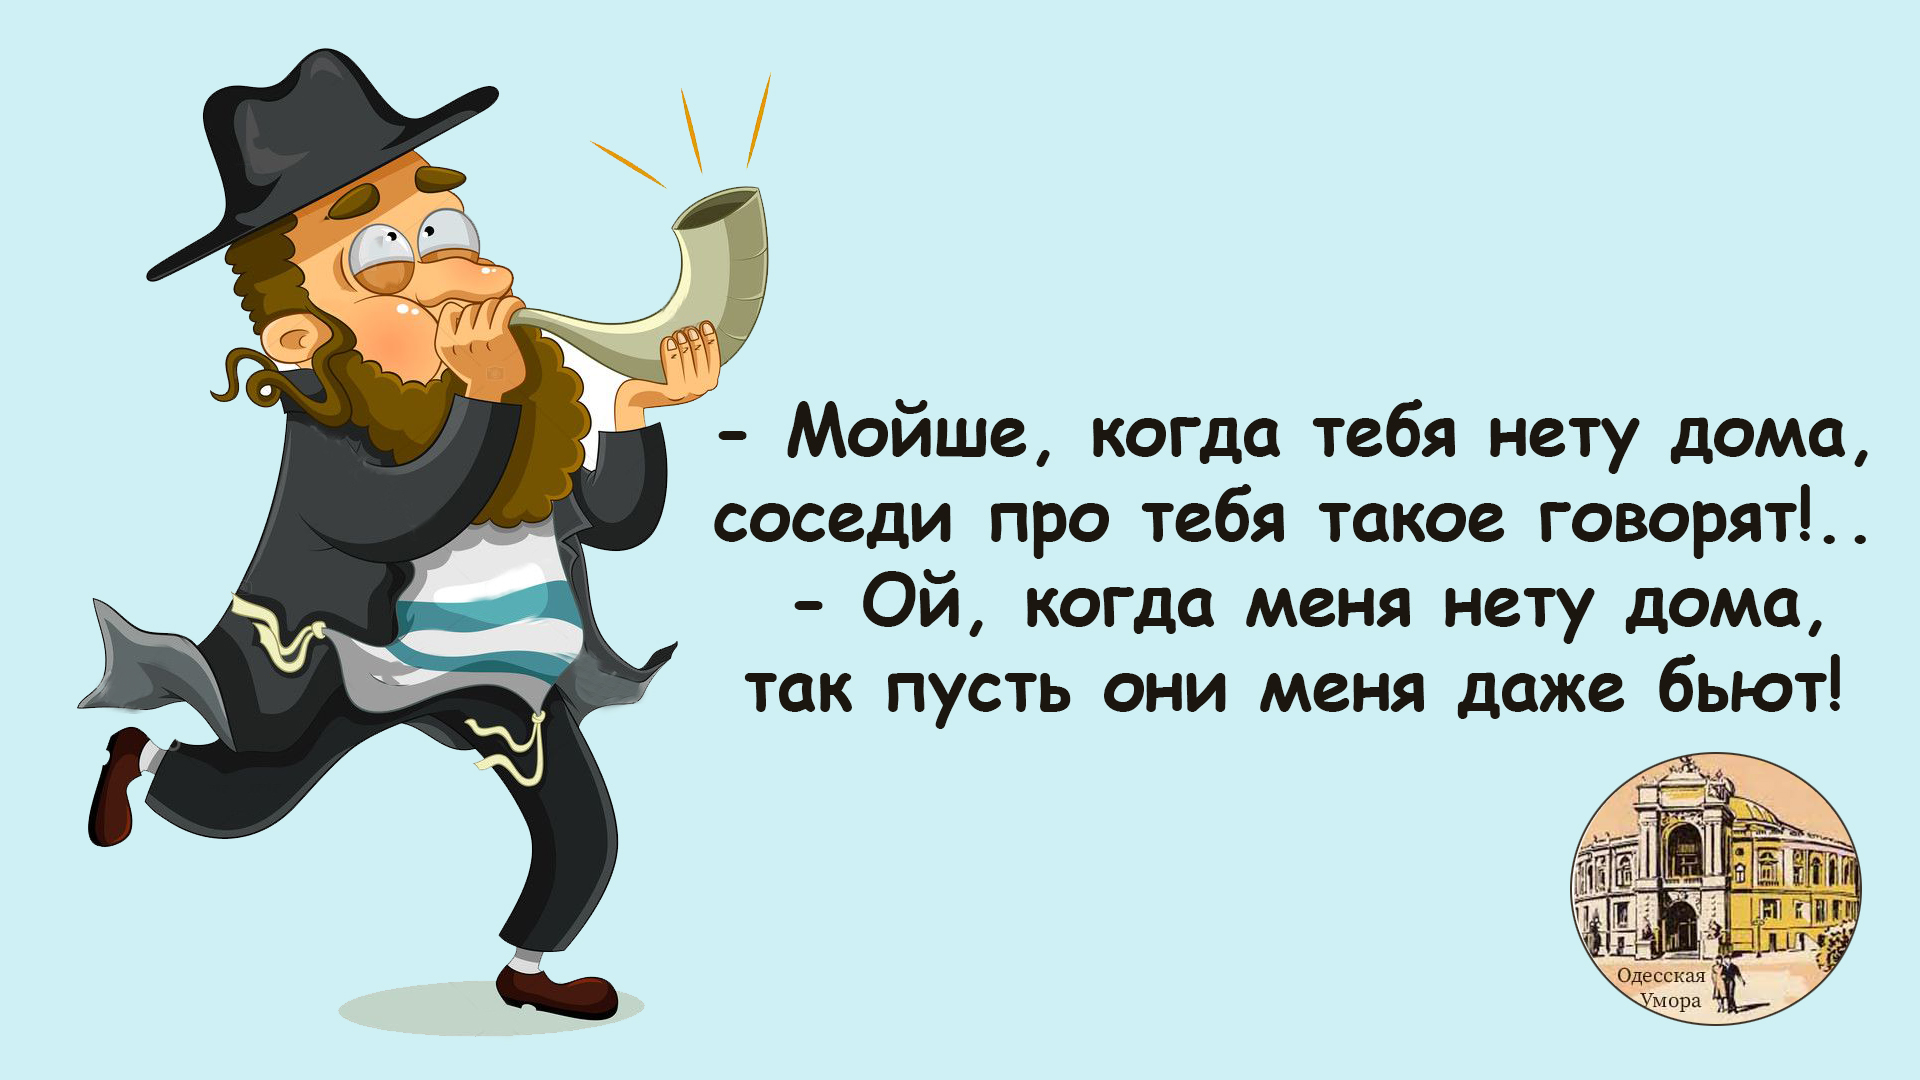 Одесские анекдоты слушать. Одесские анекдоты. Одесские шутки и выражения. Одесса приколы. Ютуб одесские анекдоты.